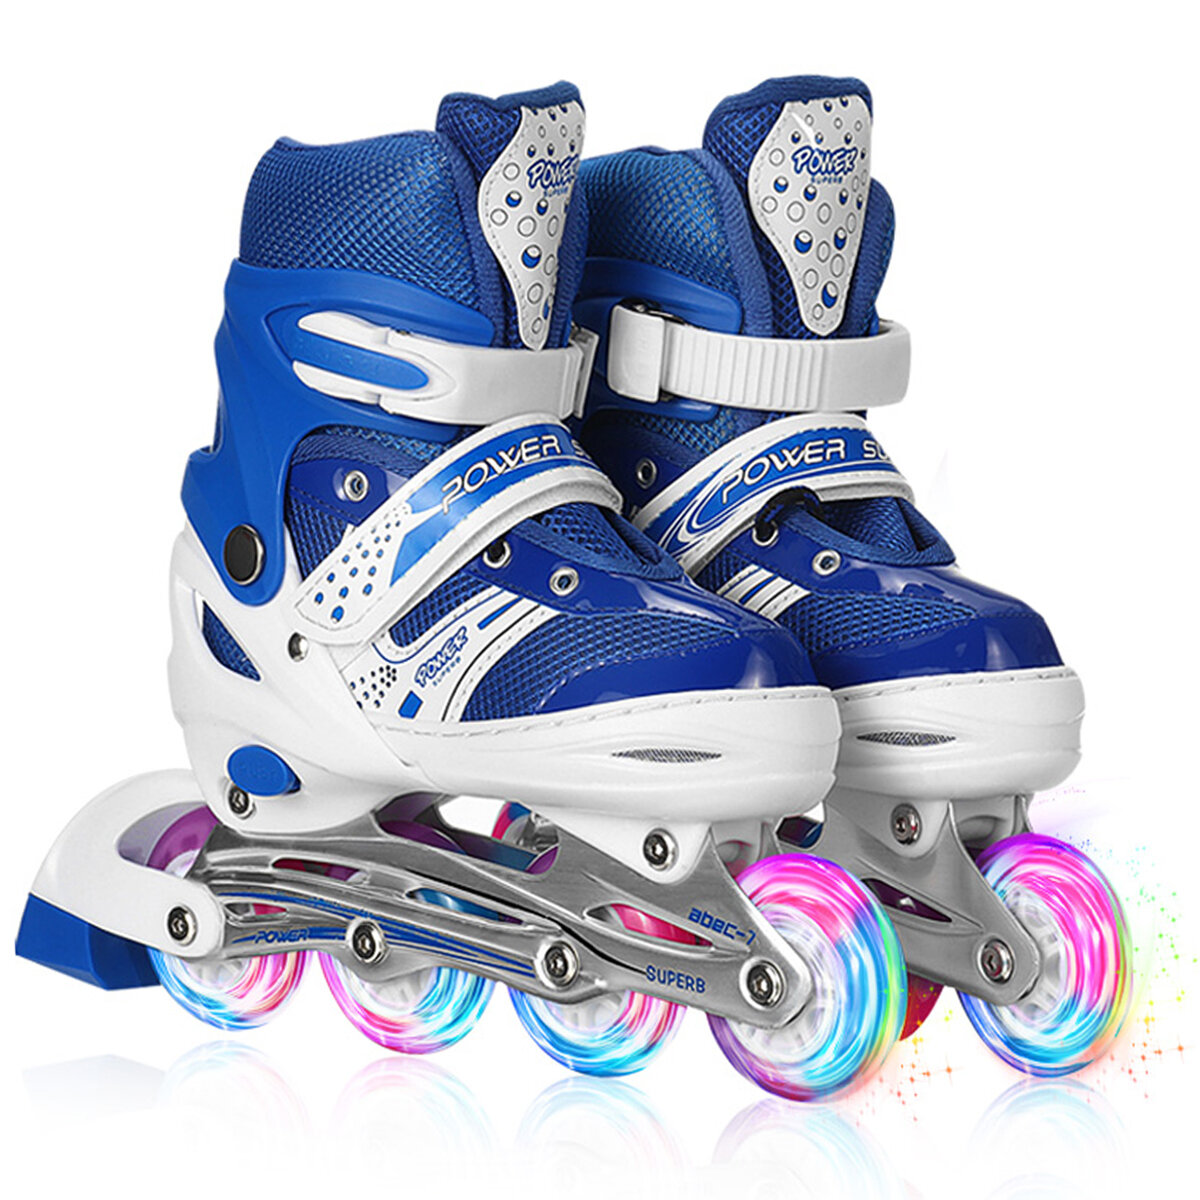 Image of Kids Skates Children Roller Skates Flash PU Full Flash Adjustable Adult Children Roller Skates Gifts